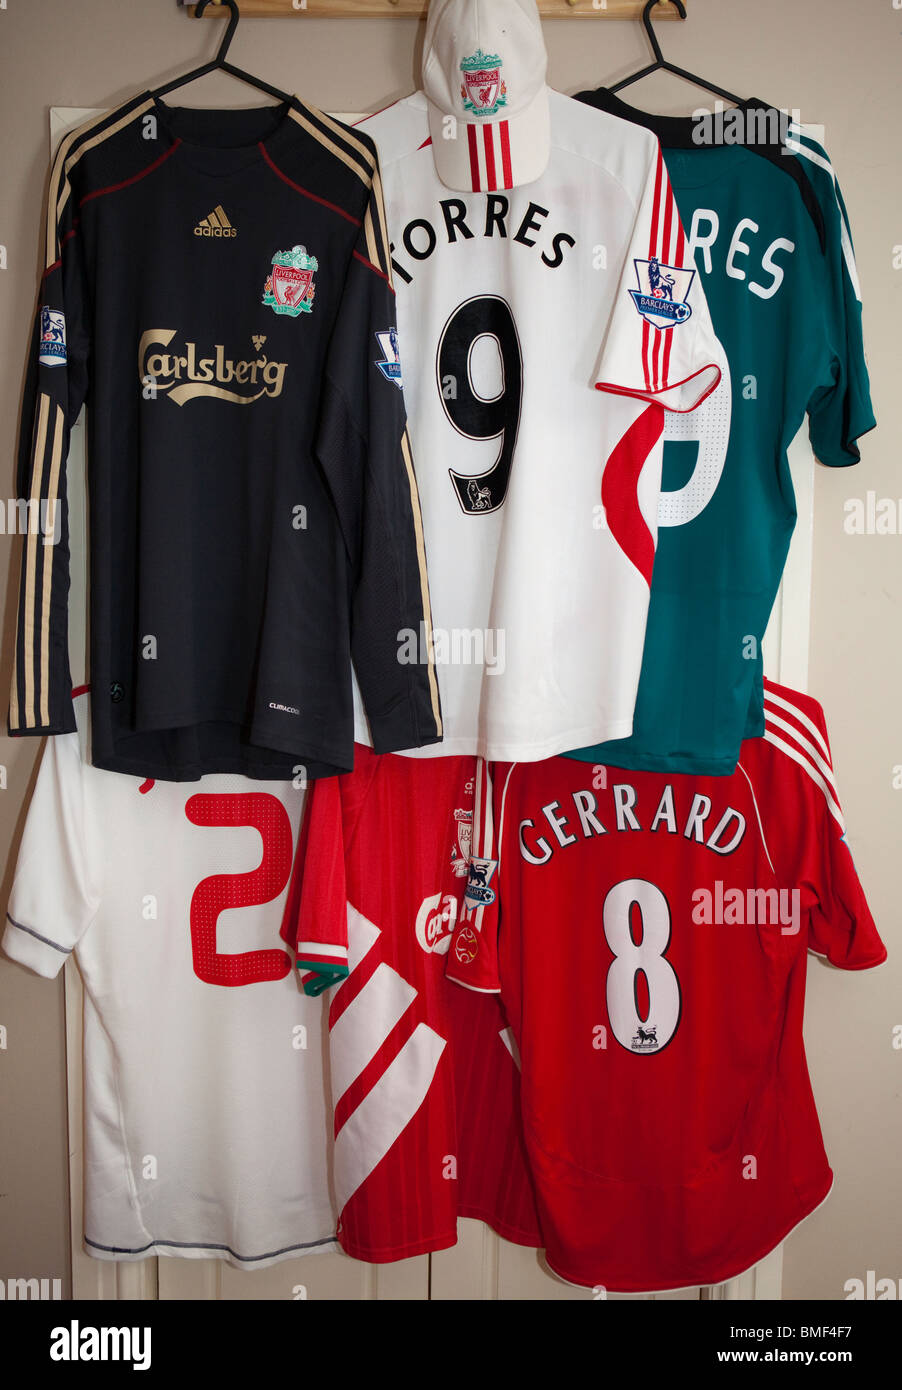 Camisetas de fútbol Liverpool FC en niños dormitorio Foto de stock